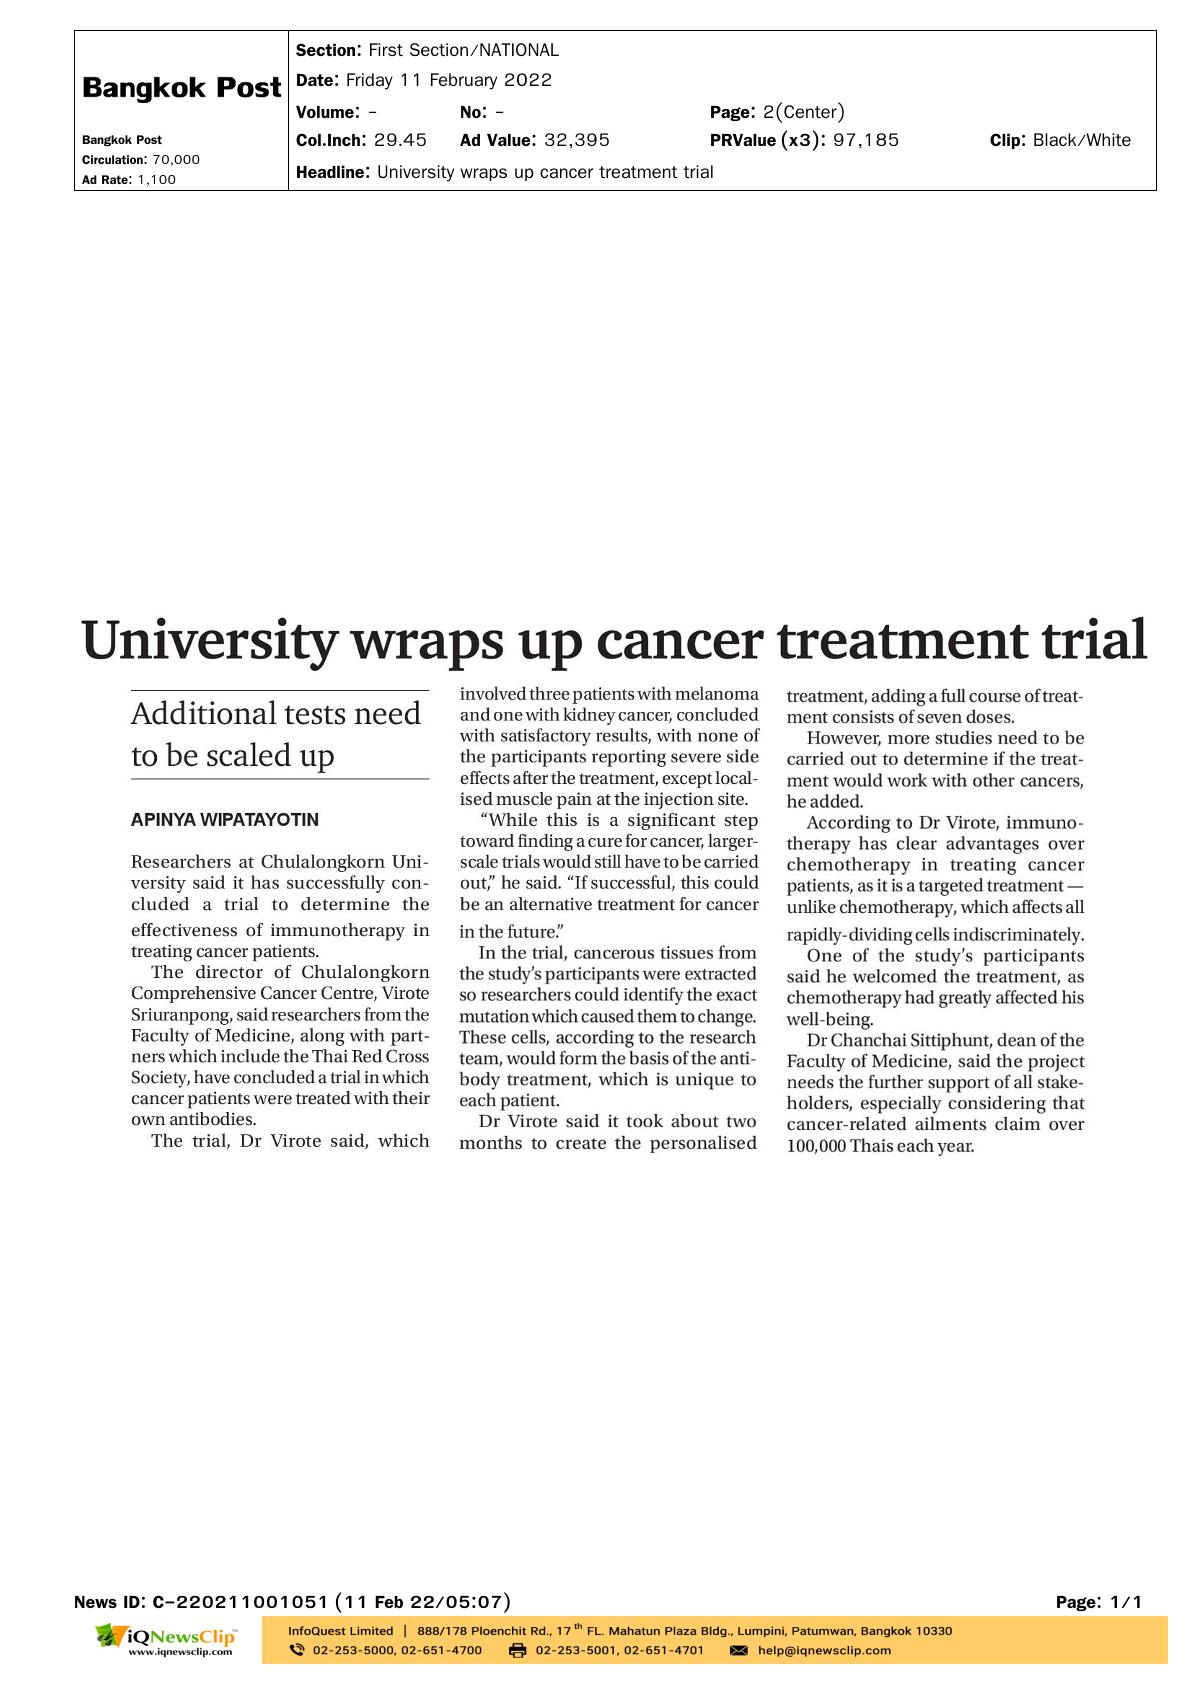 แถลงข่าวผล “ความก้าวหน้าวัคซีนรักษามะเร็งฯ”